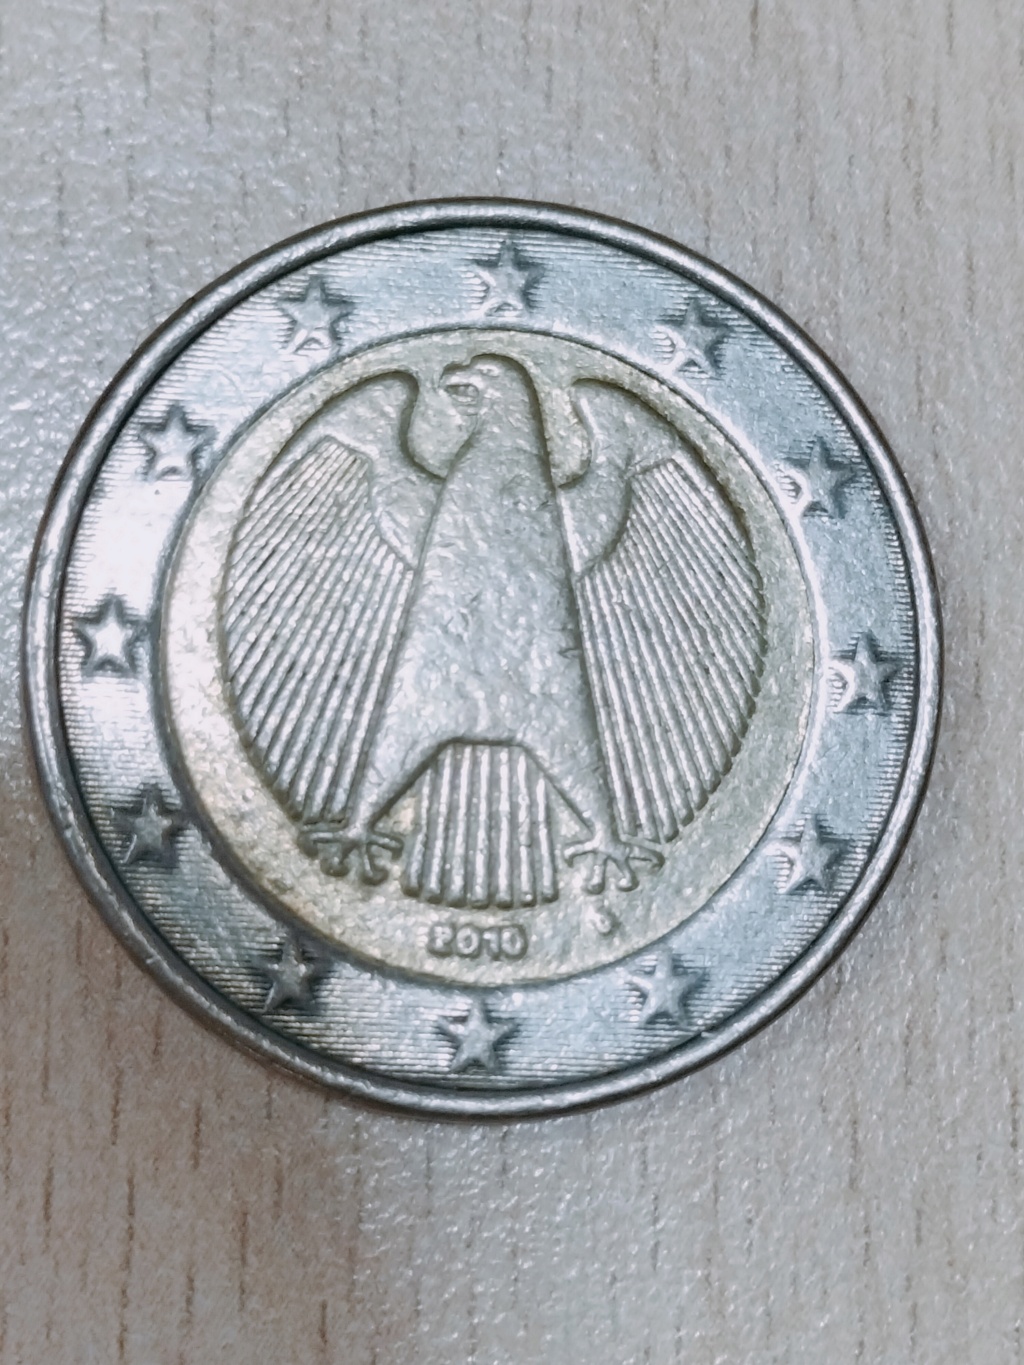 2 euros alemania 2010-D - FALSA ??? Img20291